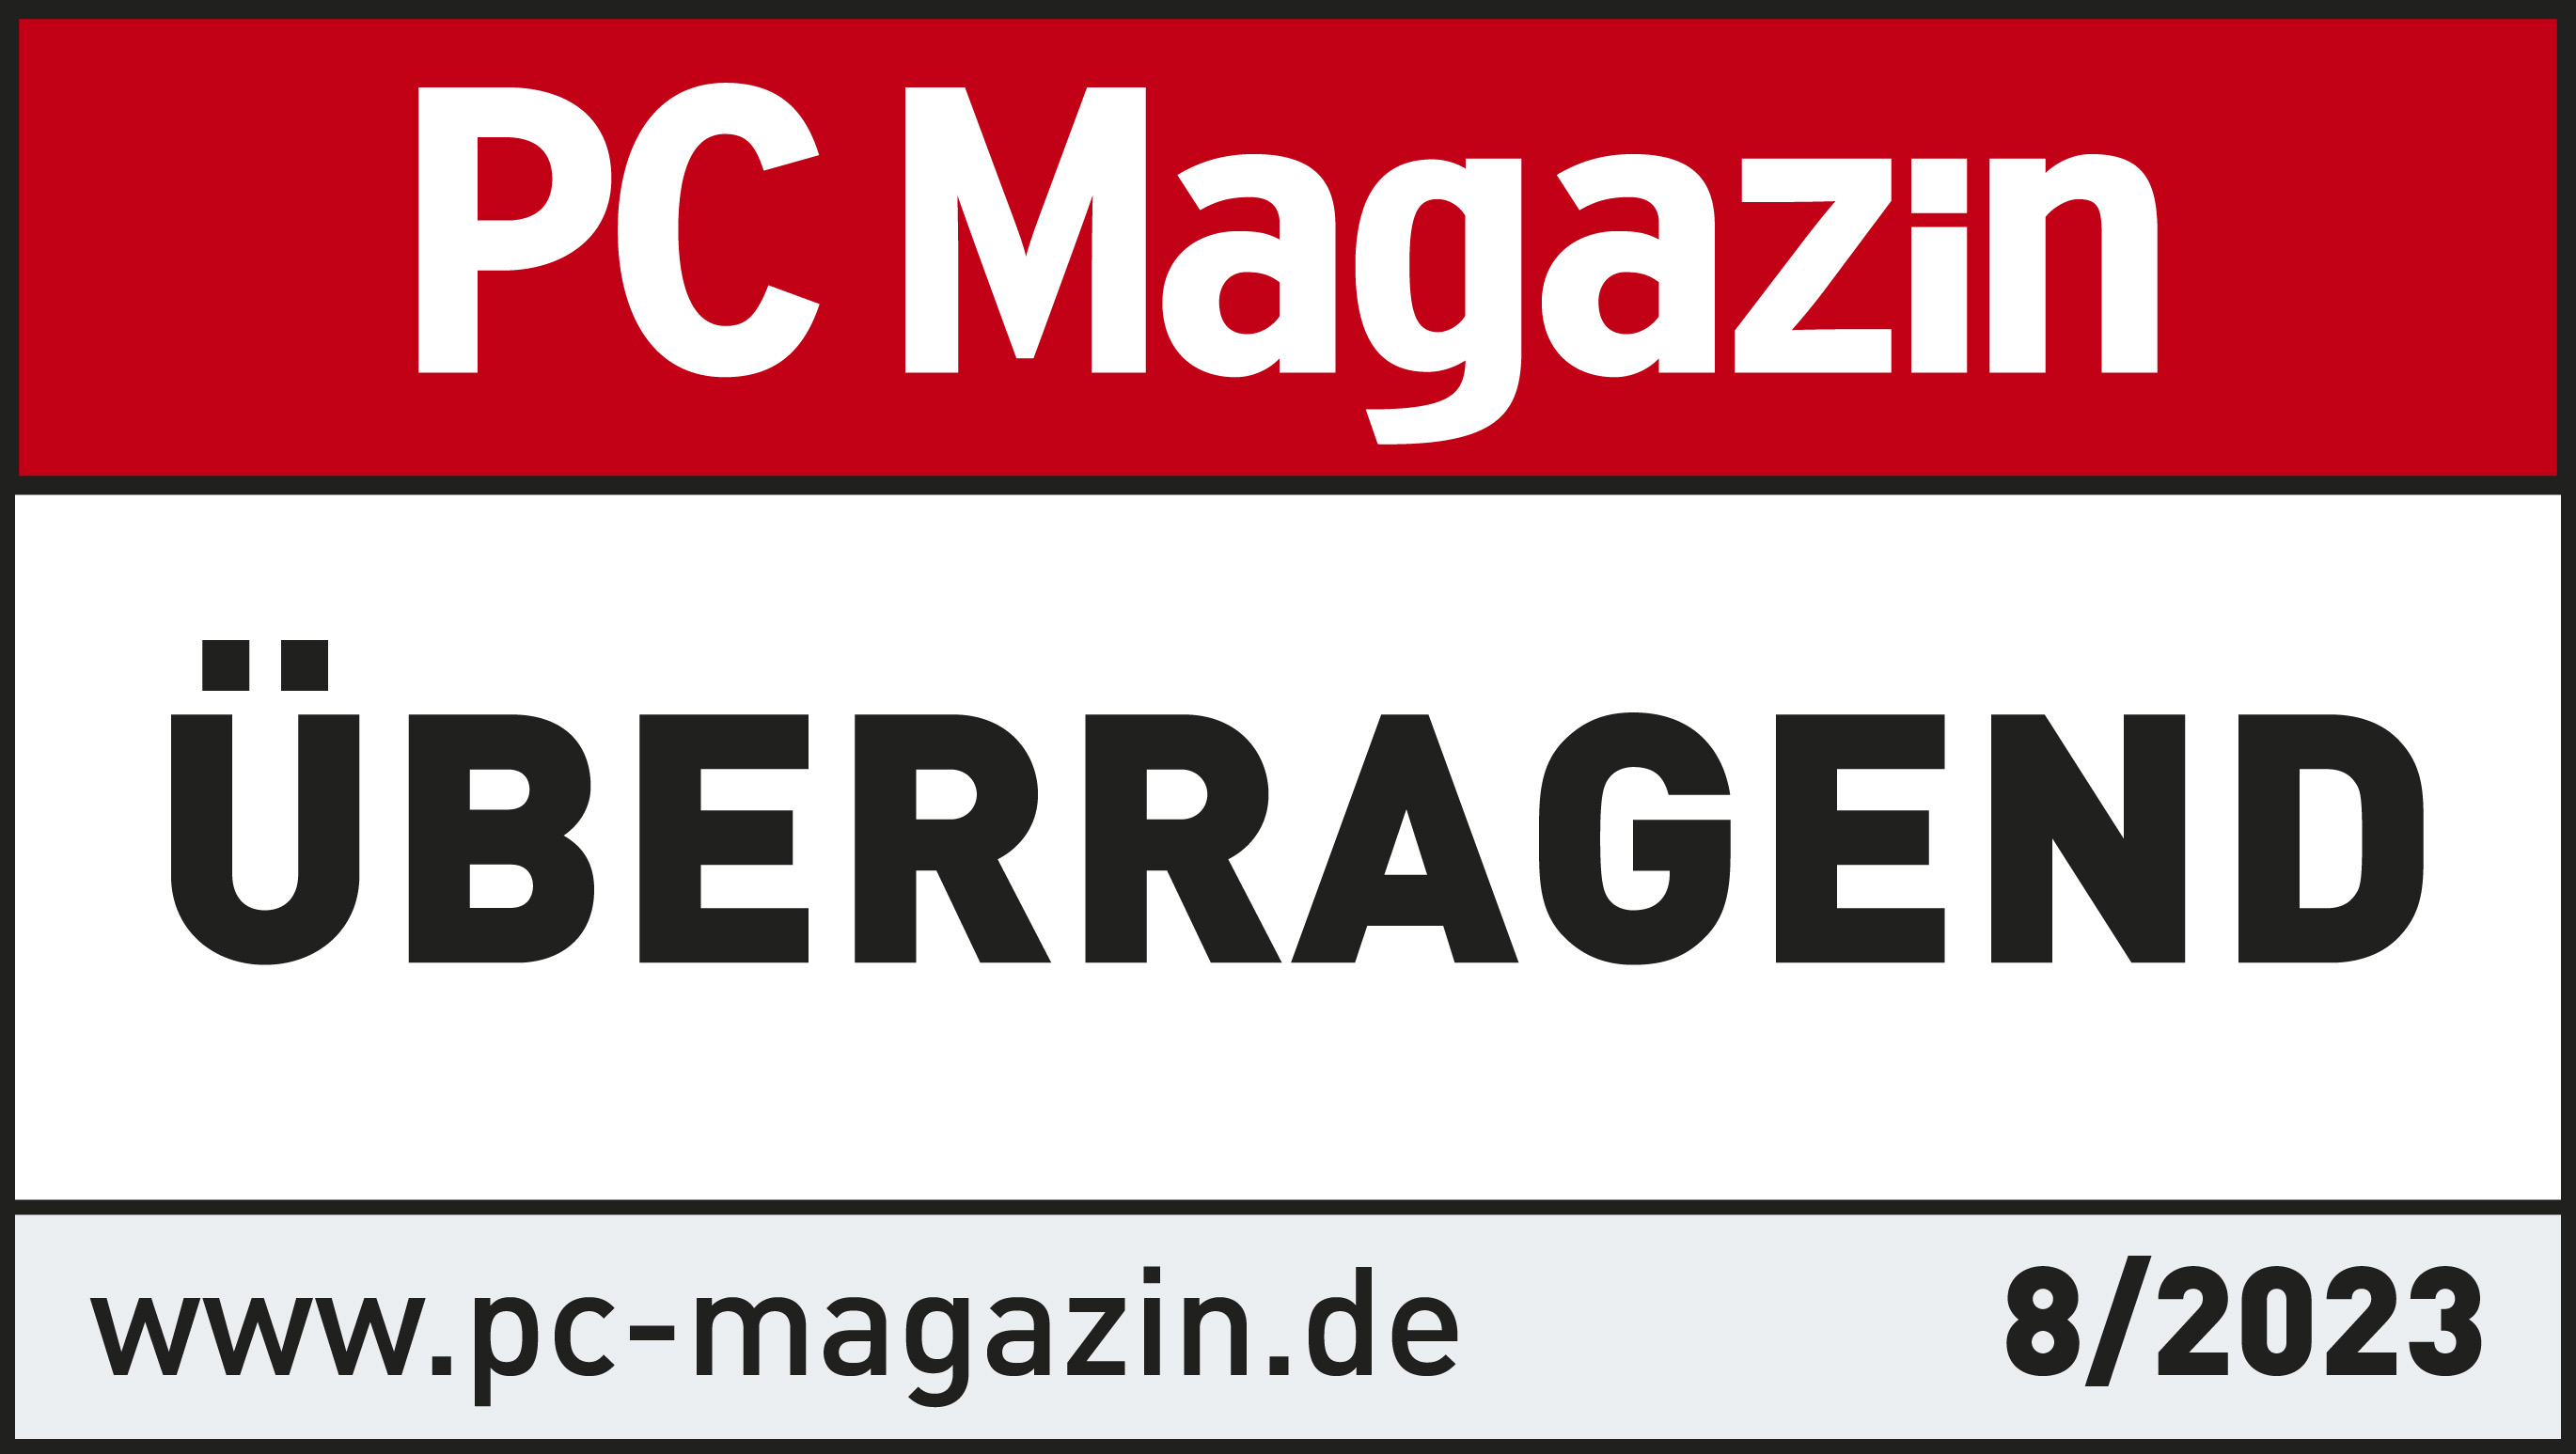 PC Magazin "sehr gut" für Kundenverwaltungsprogramm